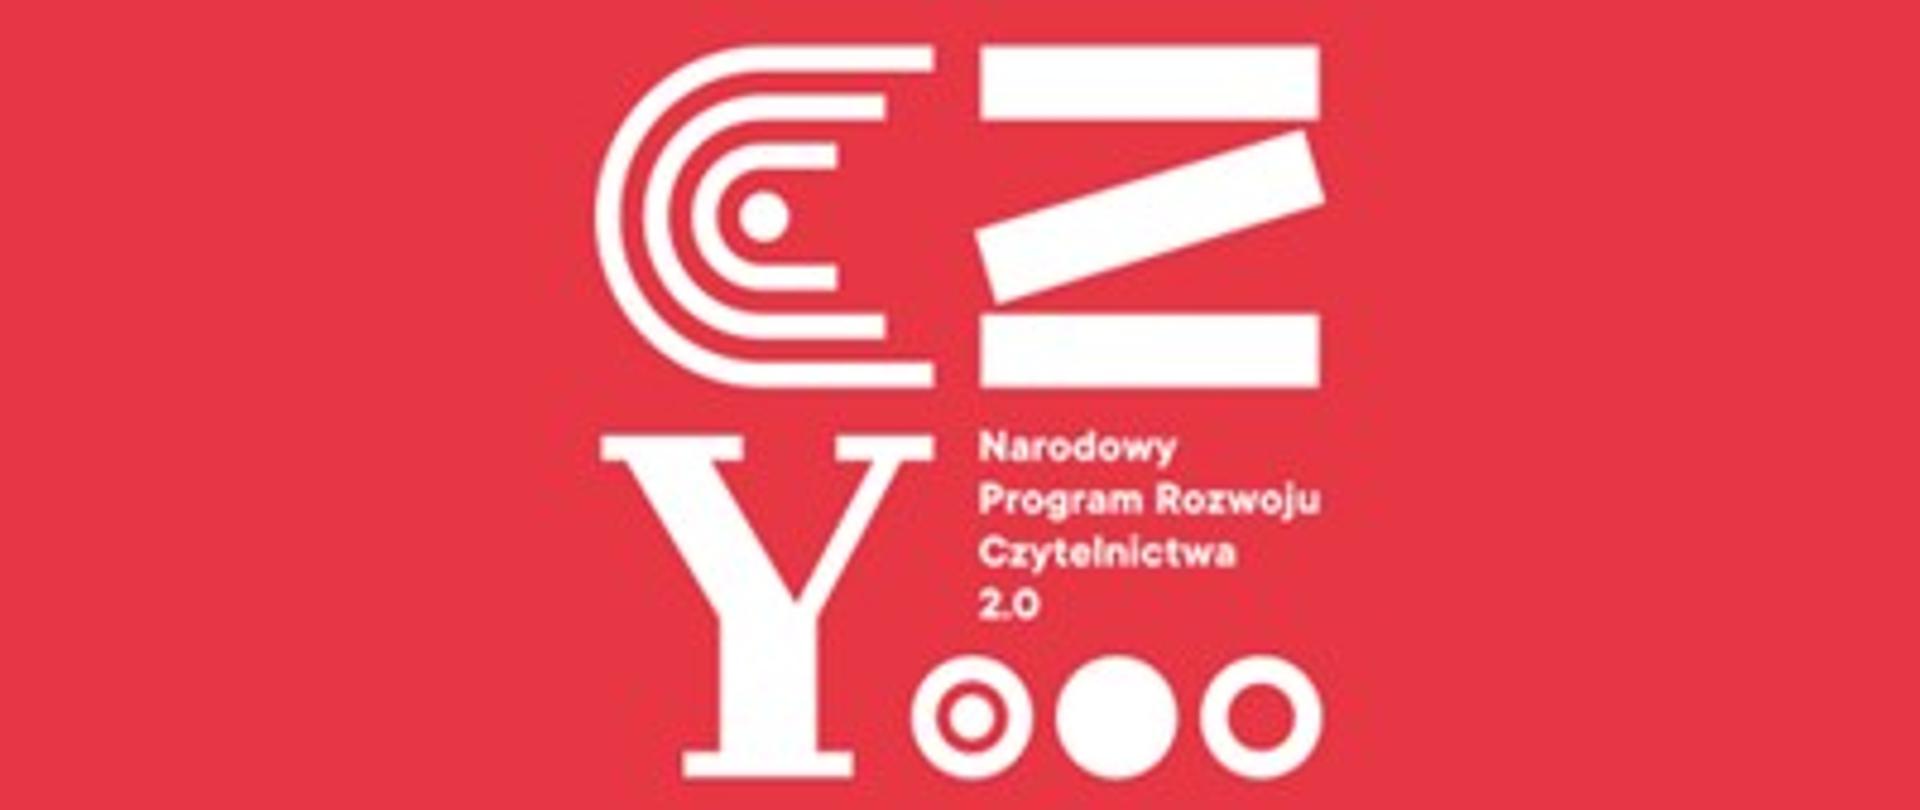 Na czerwonym prostokątnym tle białym kolorem napis ze stylizowanych liter stanowiący logotyp Narodowego Programy Rozwoju Czytelnictwa 2.0